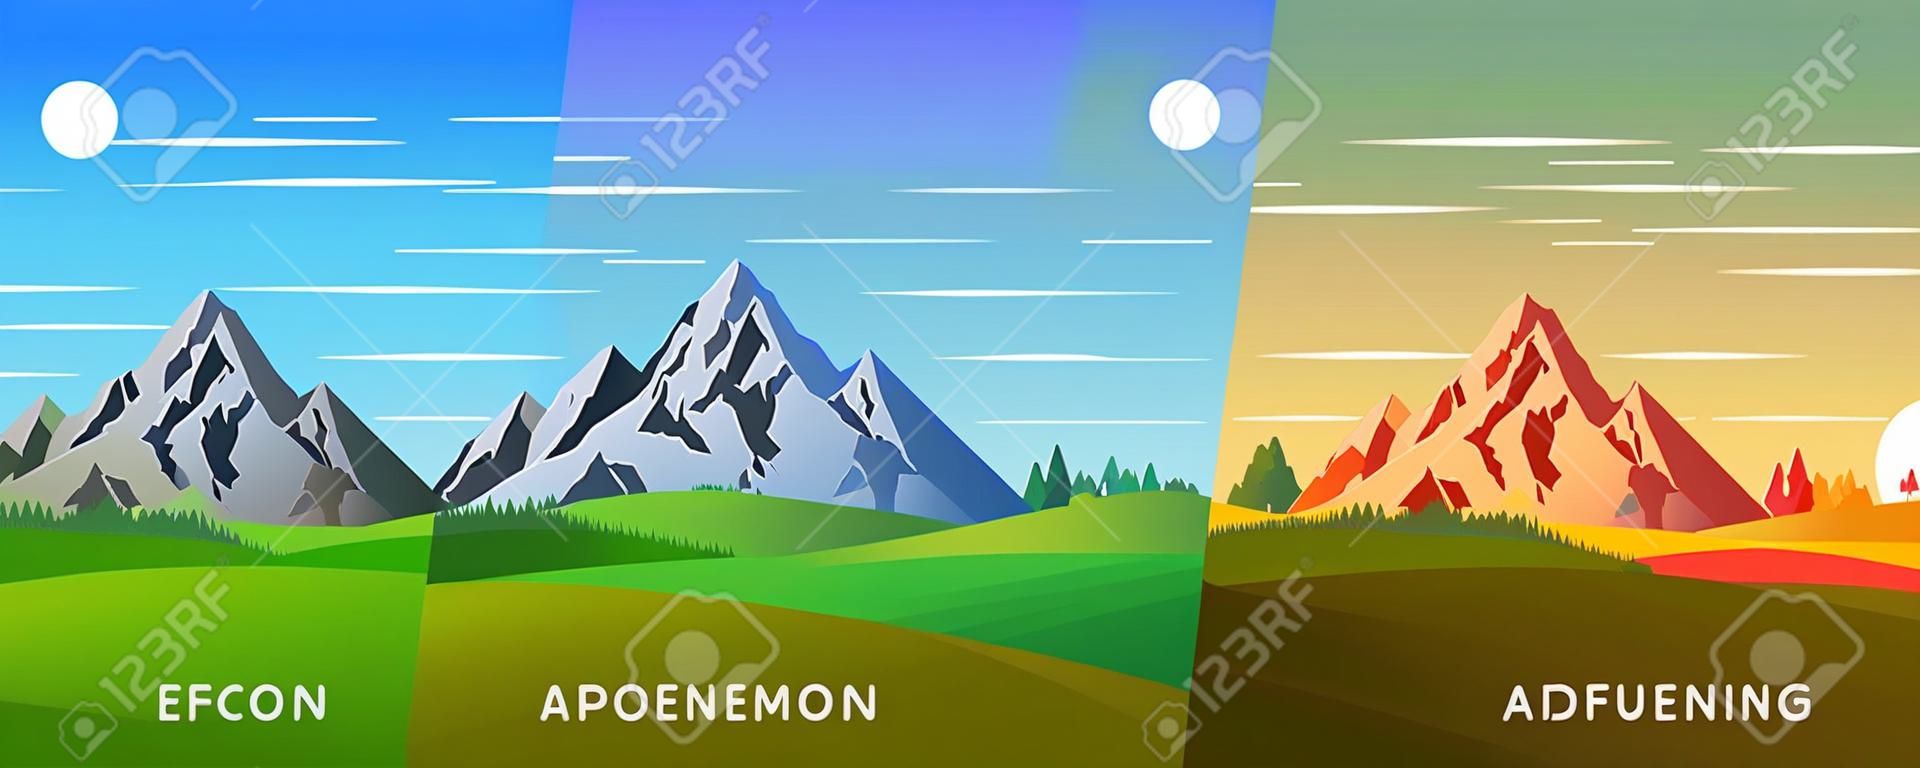 Conjunto de quatro vectores de fundo dos tempos do dia. Bela paisagem de montanha com céu colorido. Fundo em estilo de desenho animado plano - ilustração de paisagem poligonal. Cores brilhantes.